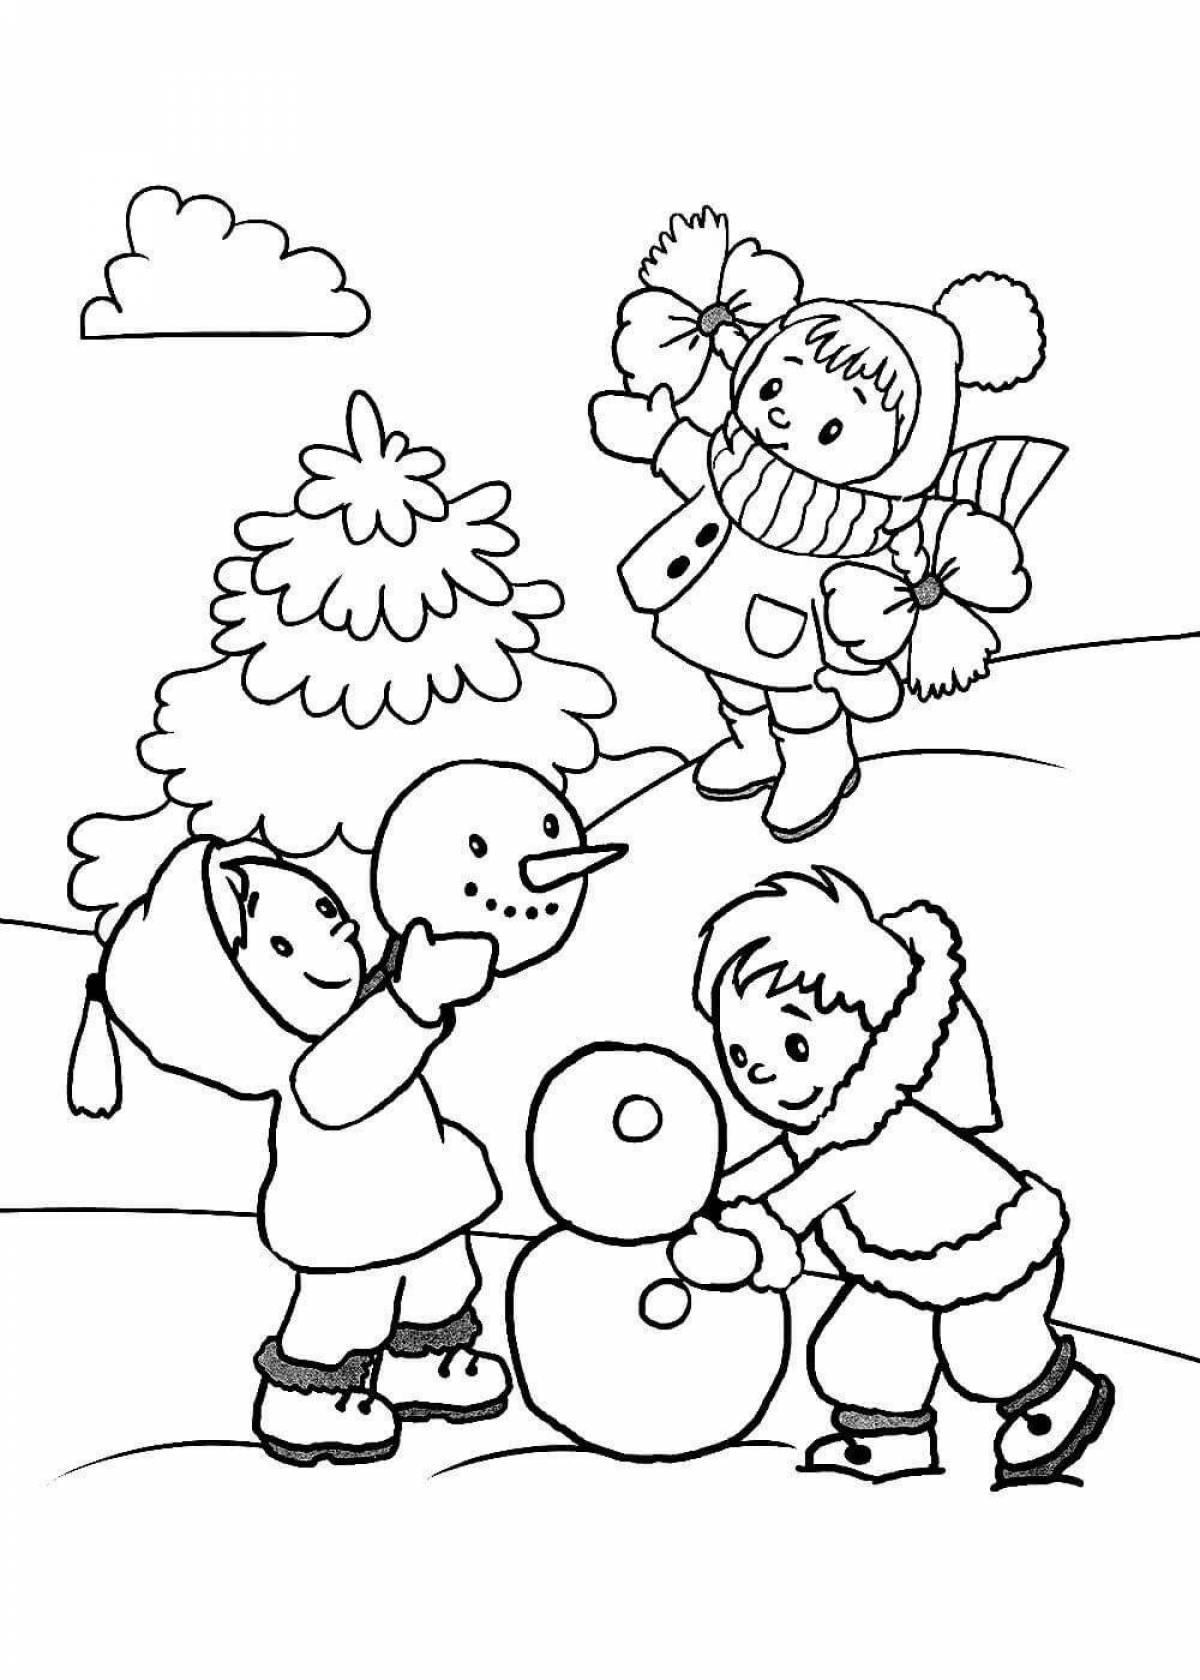 Анимированная раскраска «бой в снежки» для детей